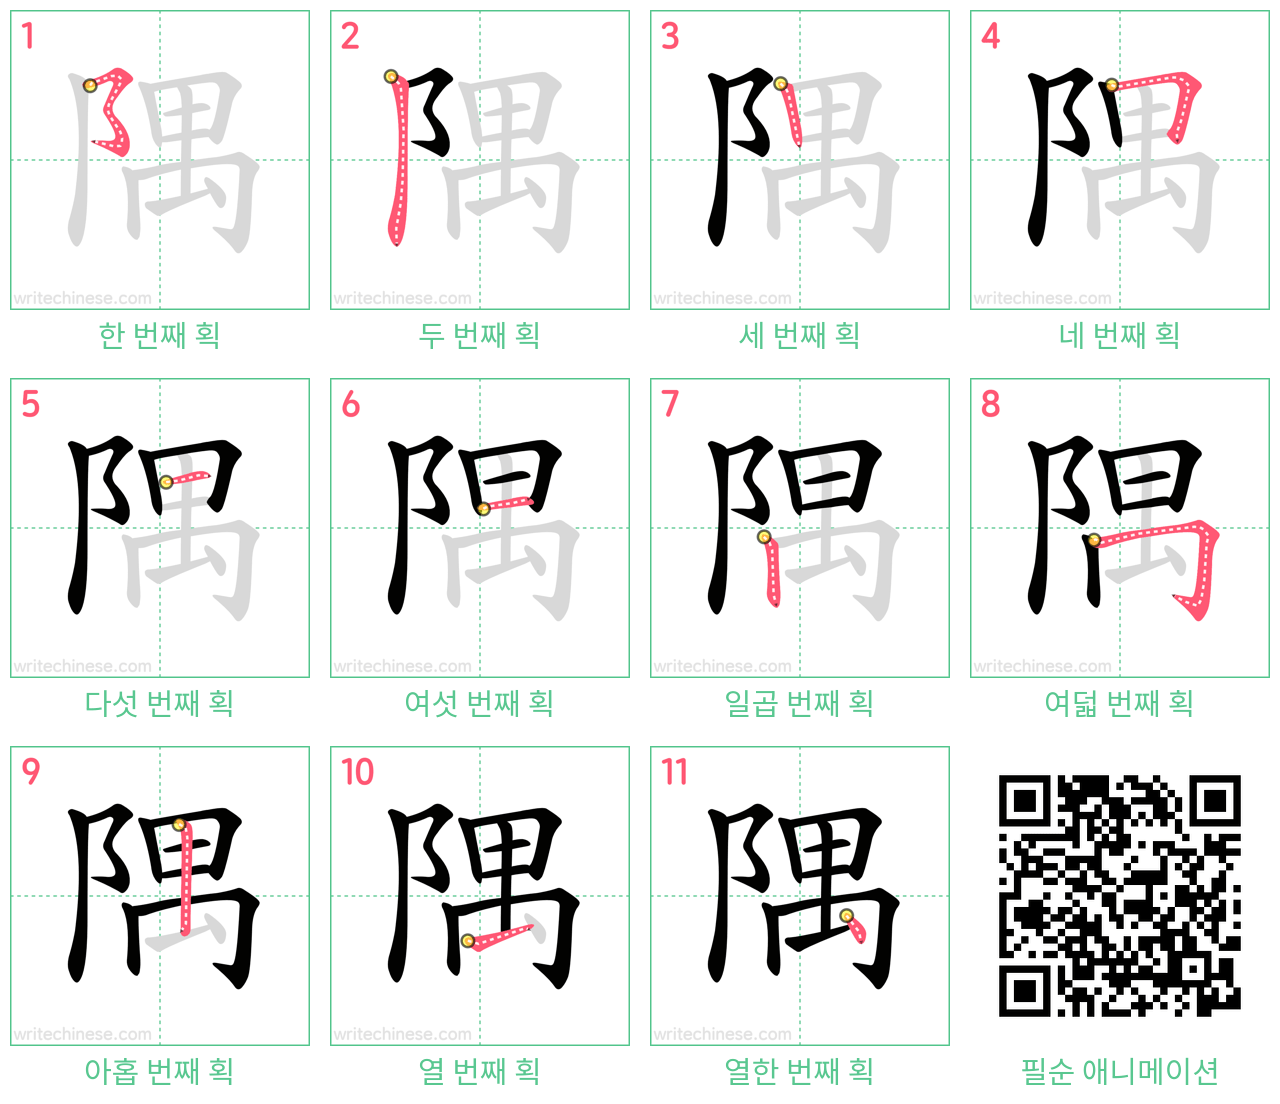 隅 step-by-step stroke order diagrams